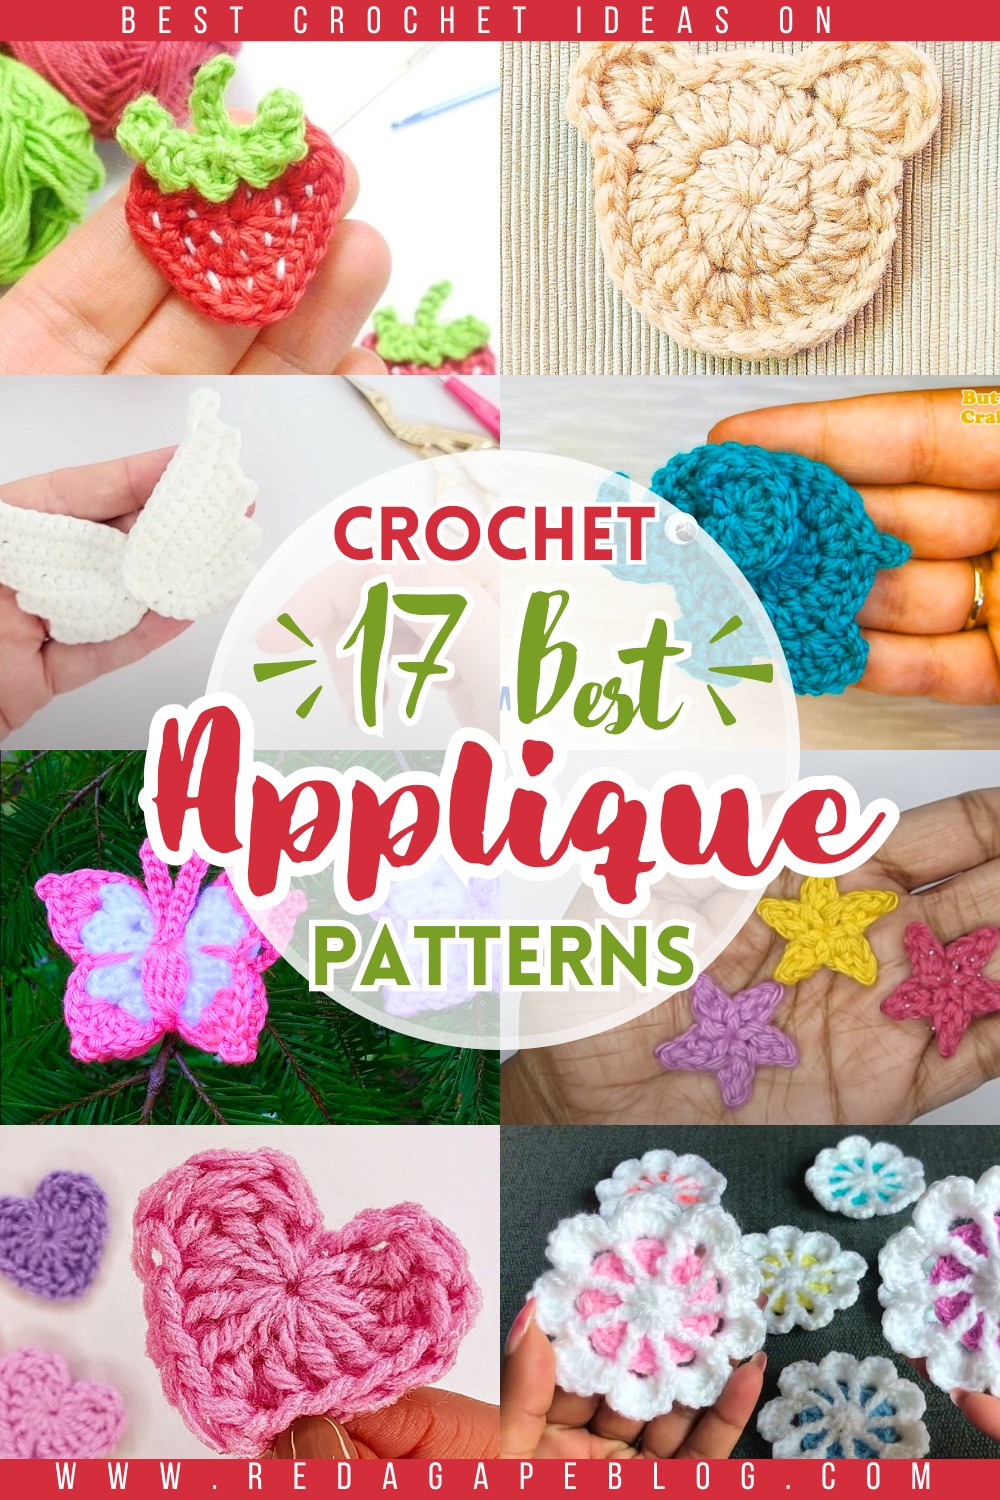 Crochet Applique Patterns